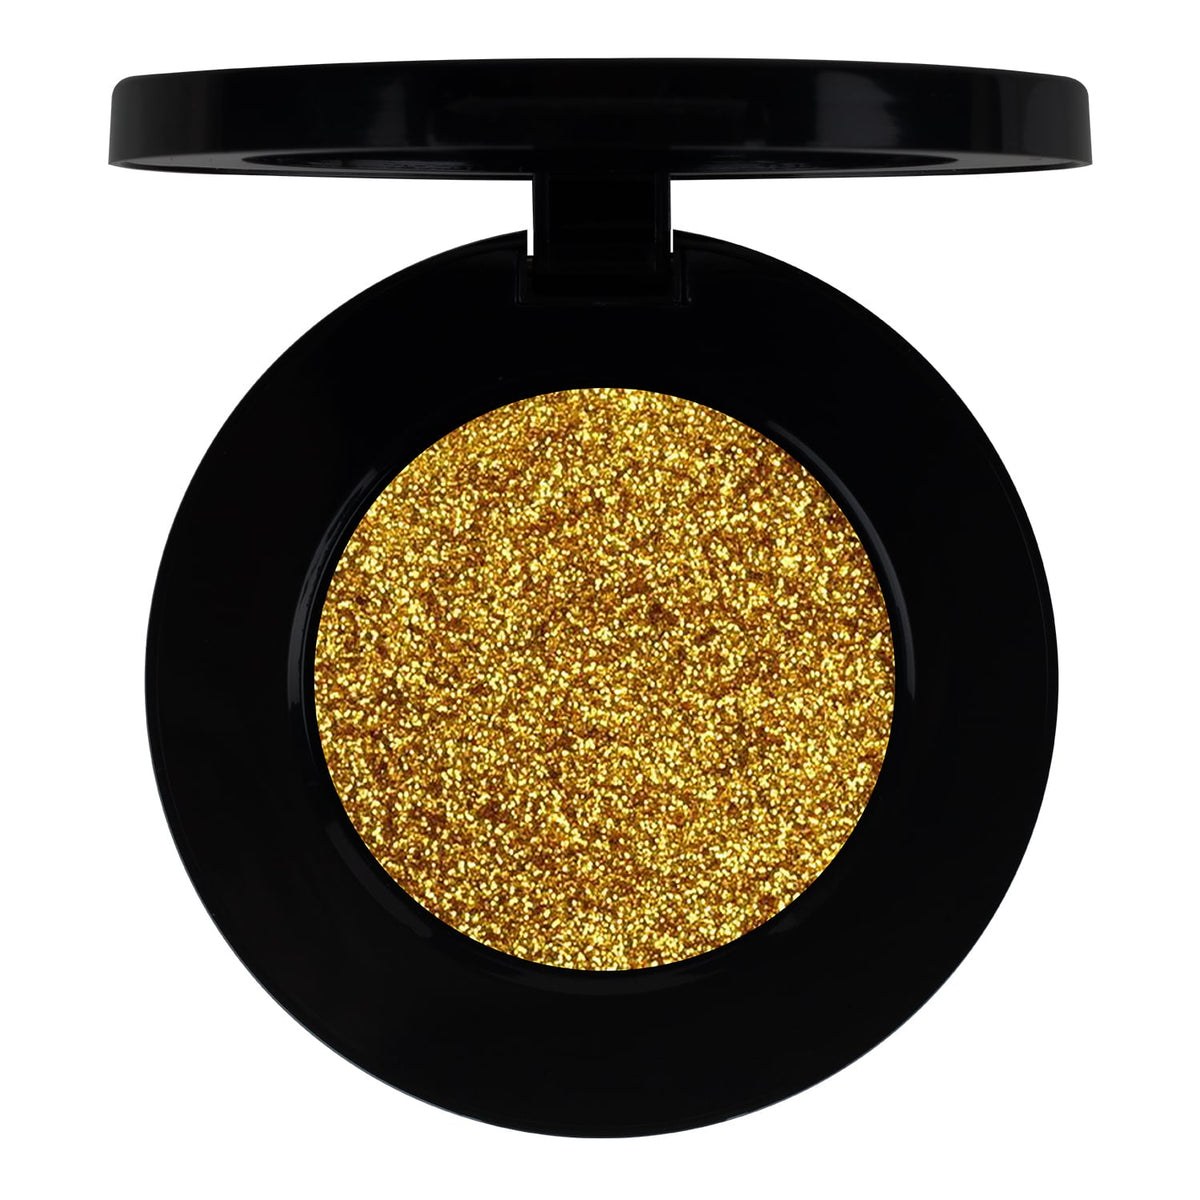 PAC Pressed Glitter Eyeshadow - 32 (Golden Hour) PAC